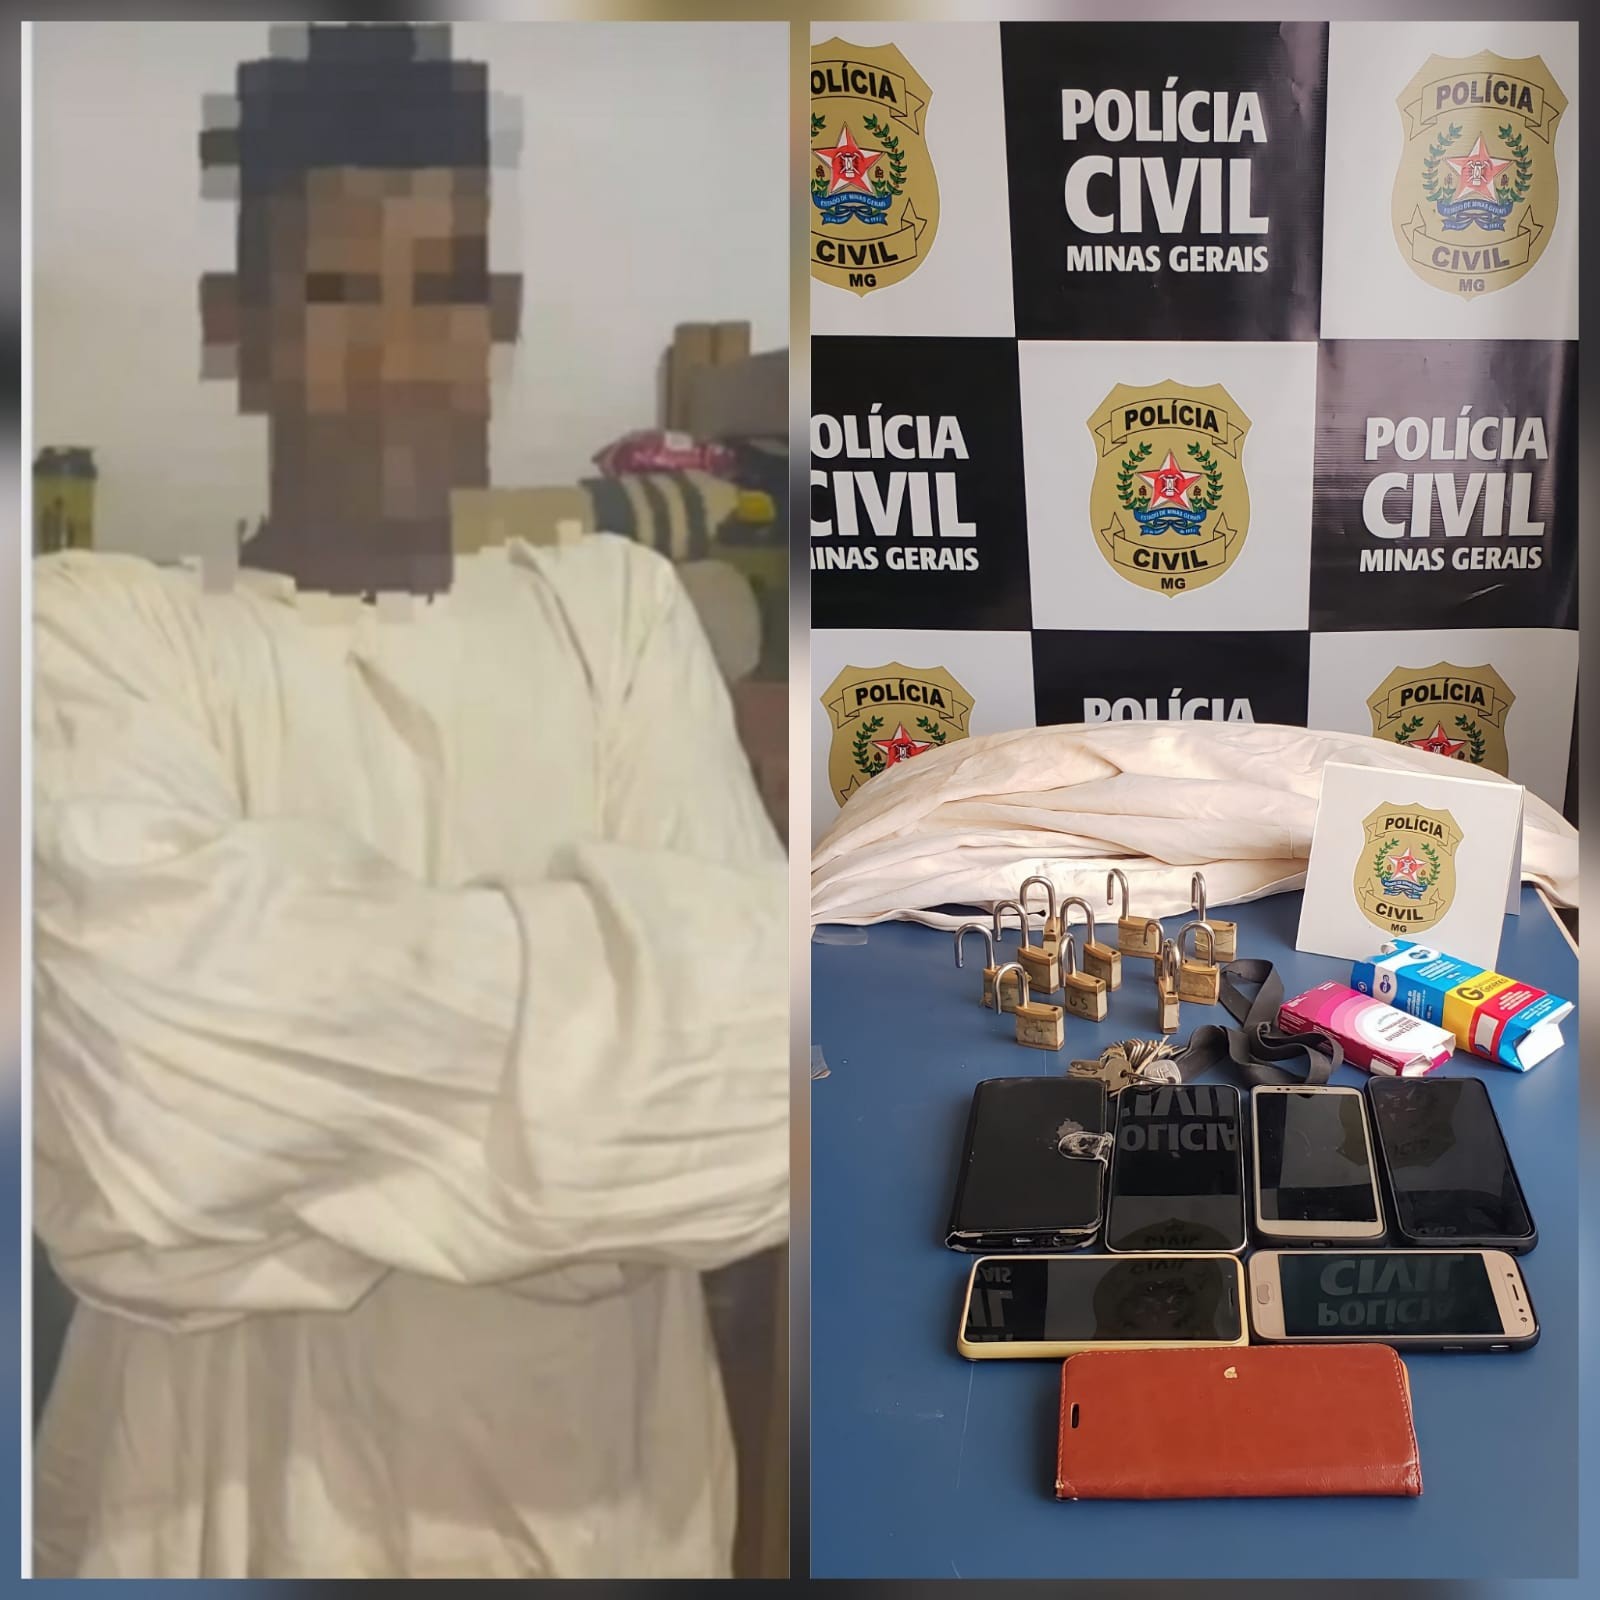 Camisa de força e cadeados são encontrados em clínica de reabilitação em MG; suspeita é de cárcere privado contra internos